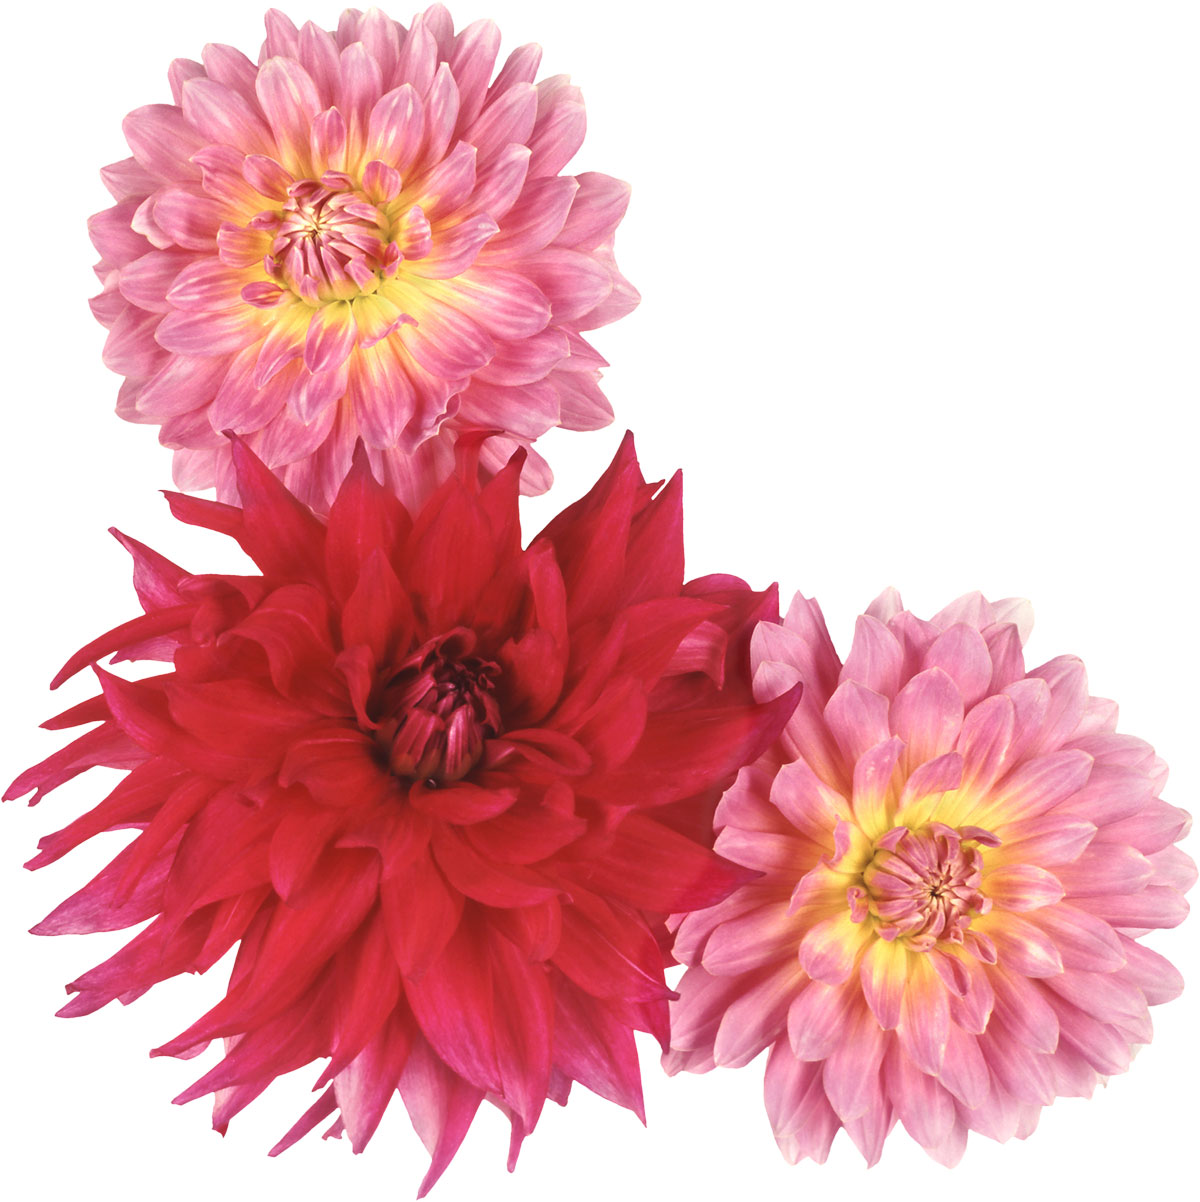 花や葉の写真 画像 フリー素材 No 478 ダリア 赤 ピンク